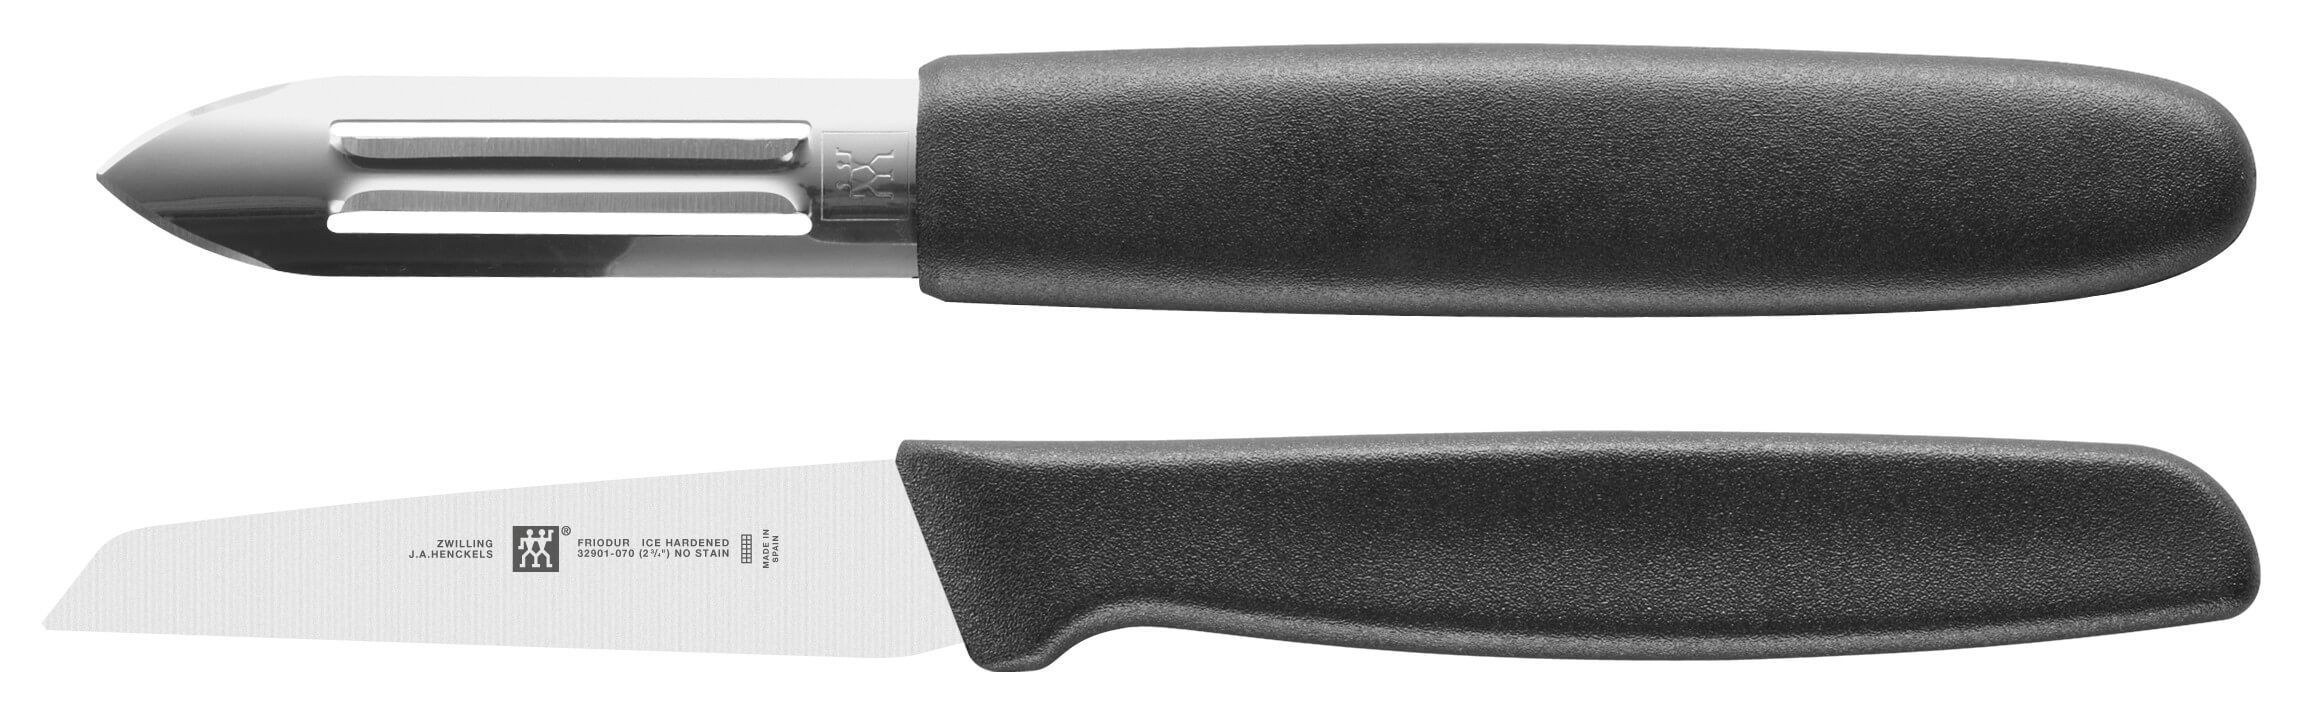 Couteau à éplucher 7 cm - zwilling/staub